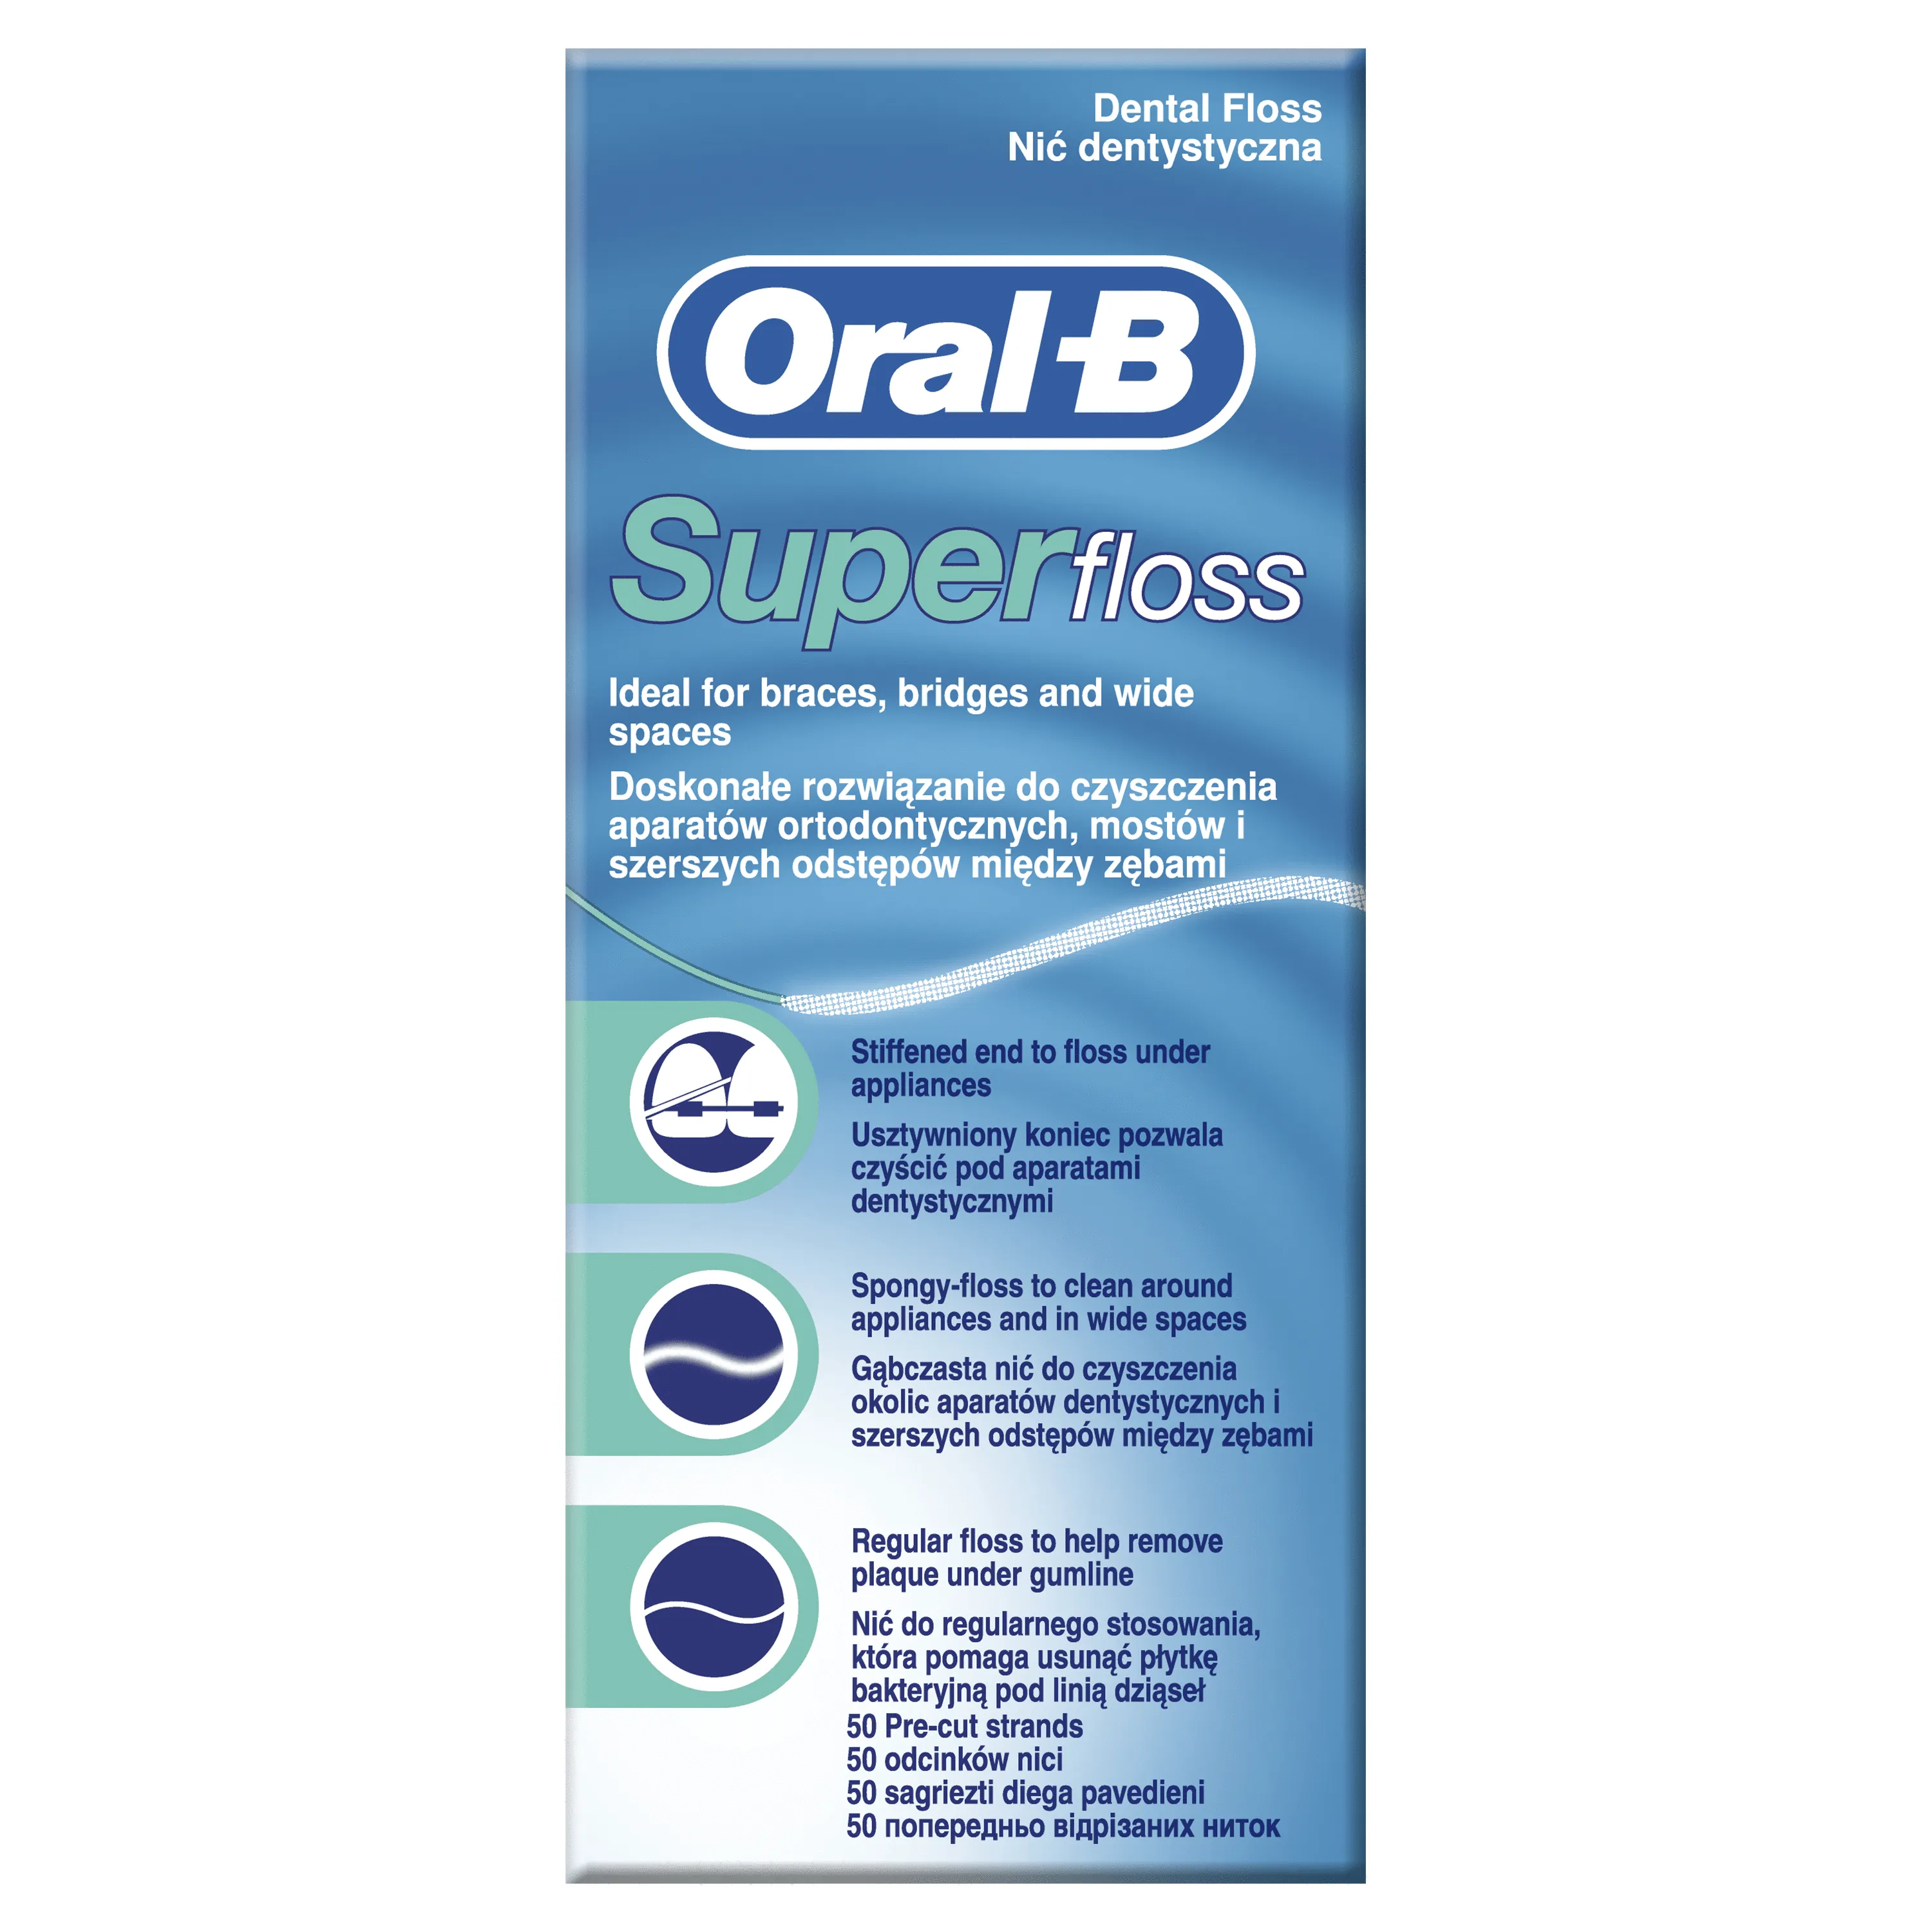 Oral-B Super Floss nić do czyszczenia aparatów ortodontycznych i mostów 50 m, 1 szt. 